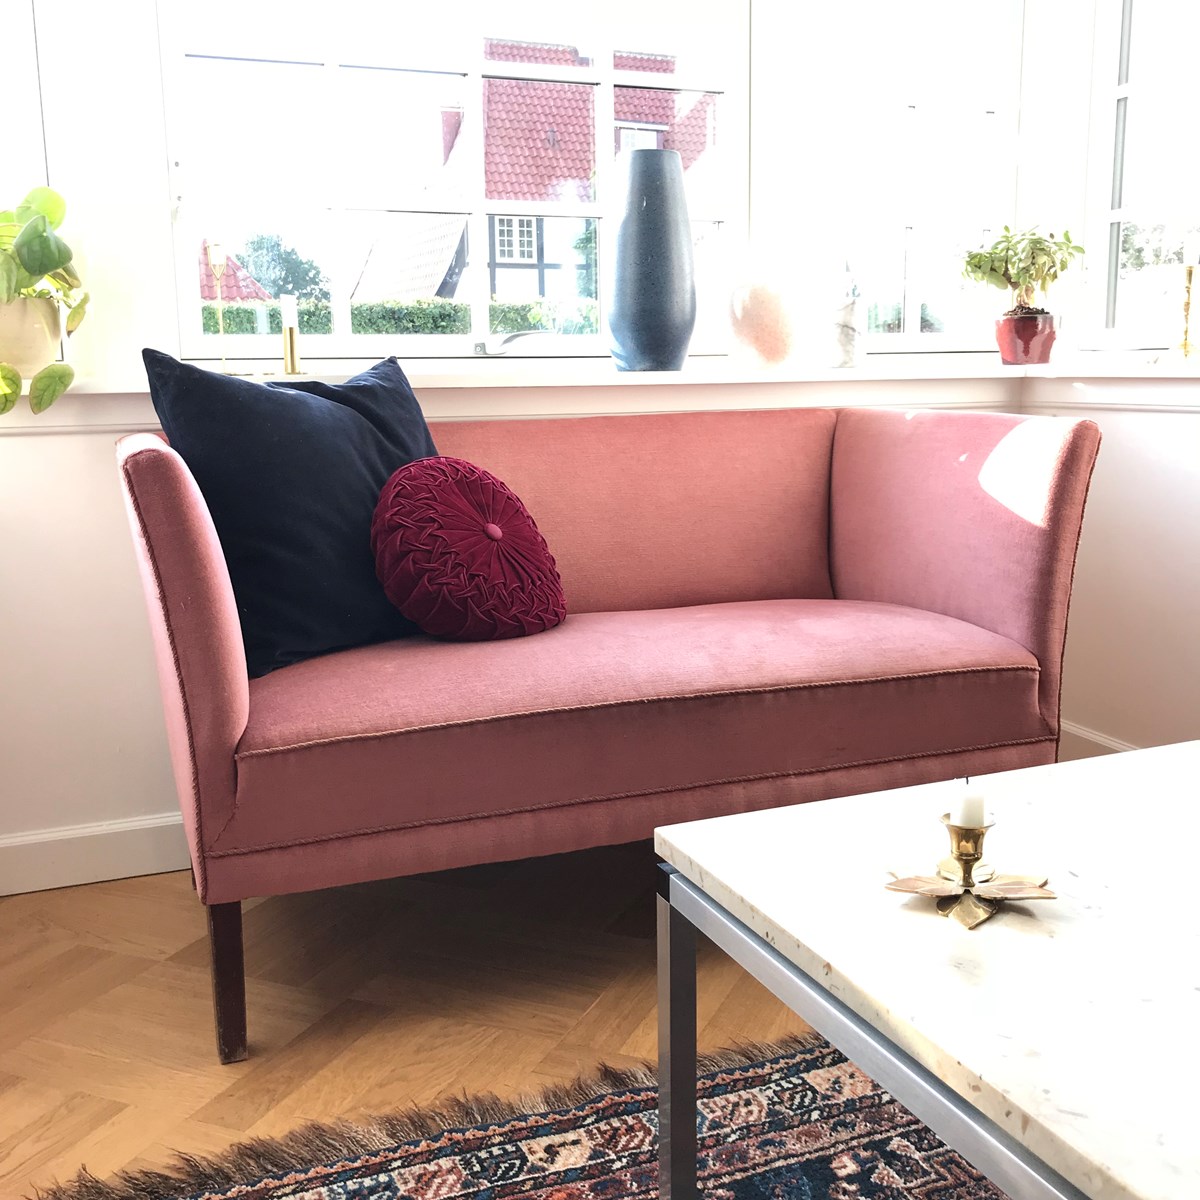 Her kan den lyserøde sofa ses. Den købte Maja for syv år siden, og historien om den kan du læse herover billedet.